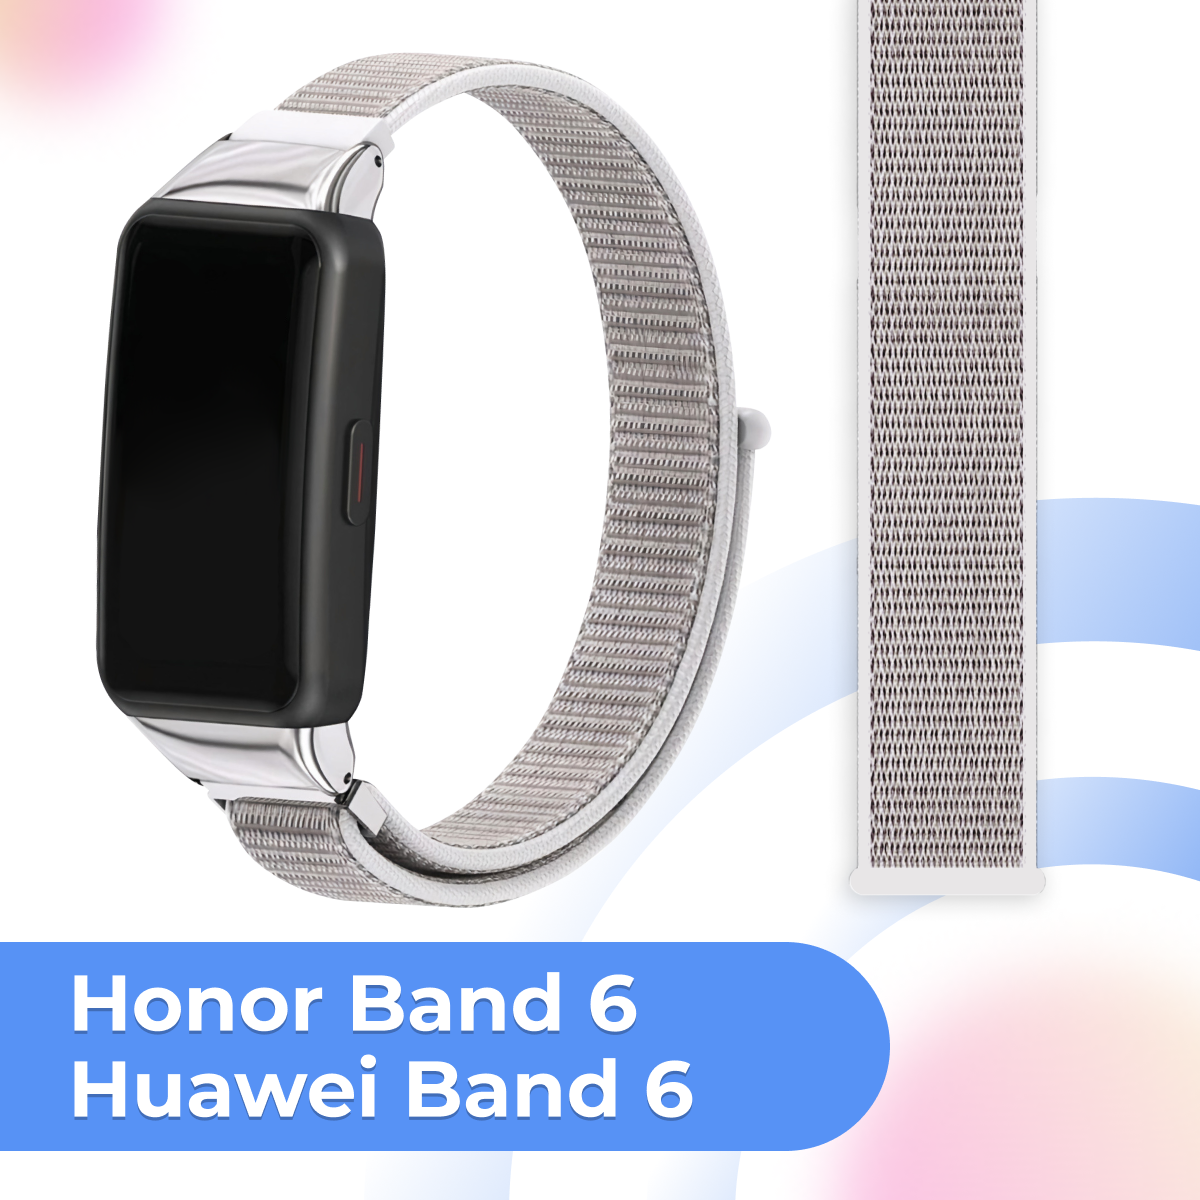 Нейлоновый ремешок для фитнес трекера Honor Band 6 и Huawei Band 6 / Тканевый сменный браслет на смарт часы Хонор Бэнд 6 и Хуавей Бэнд 6 / Сине-фиолетовый